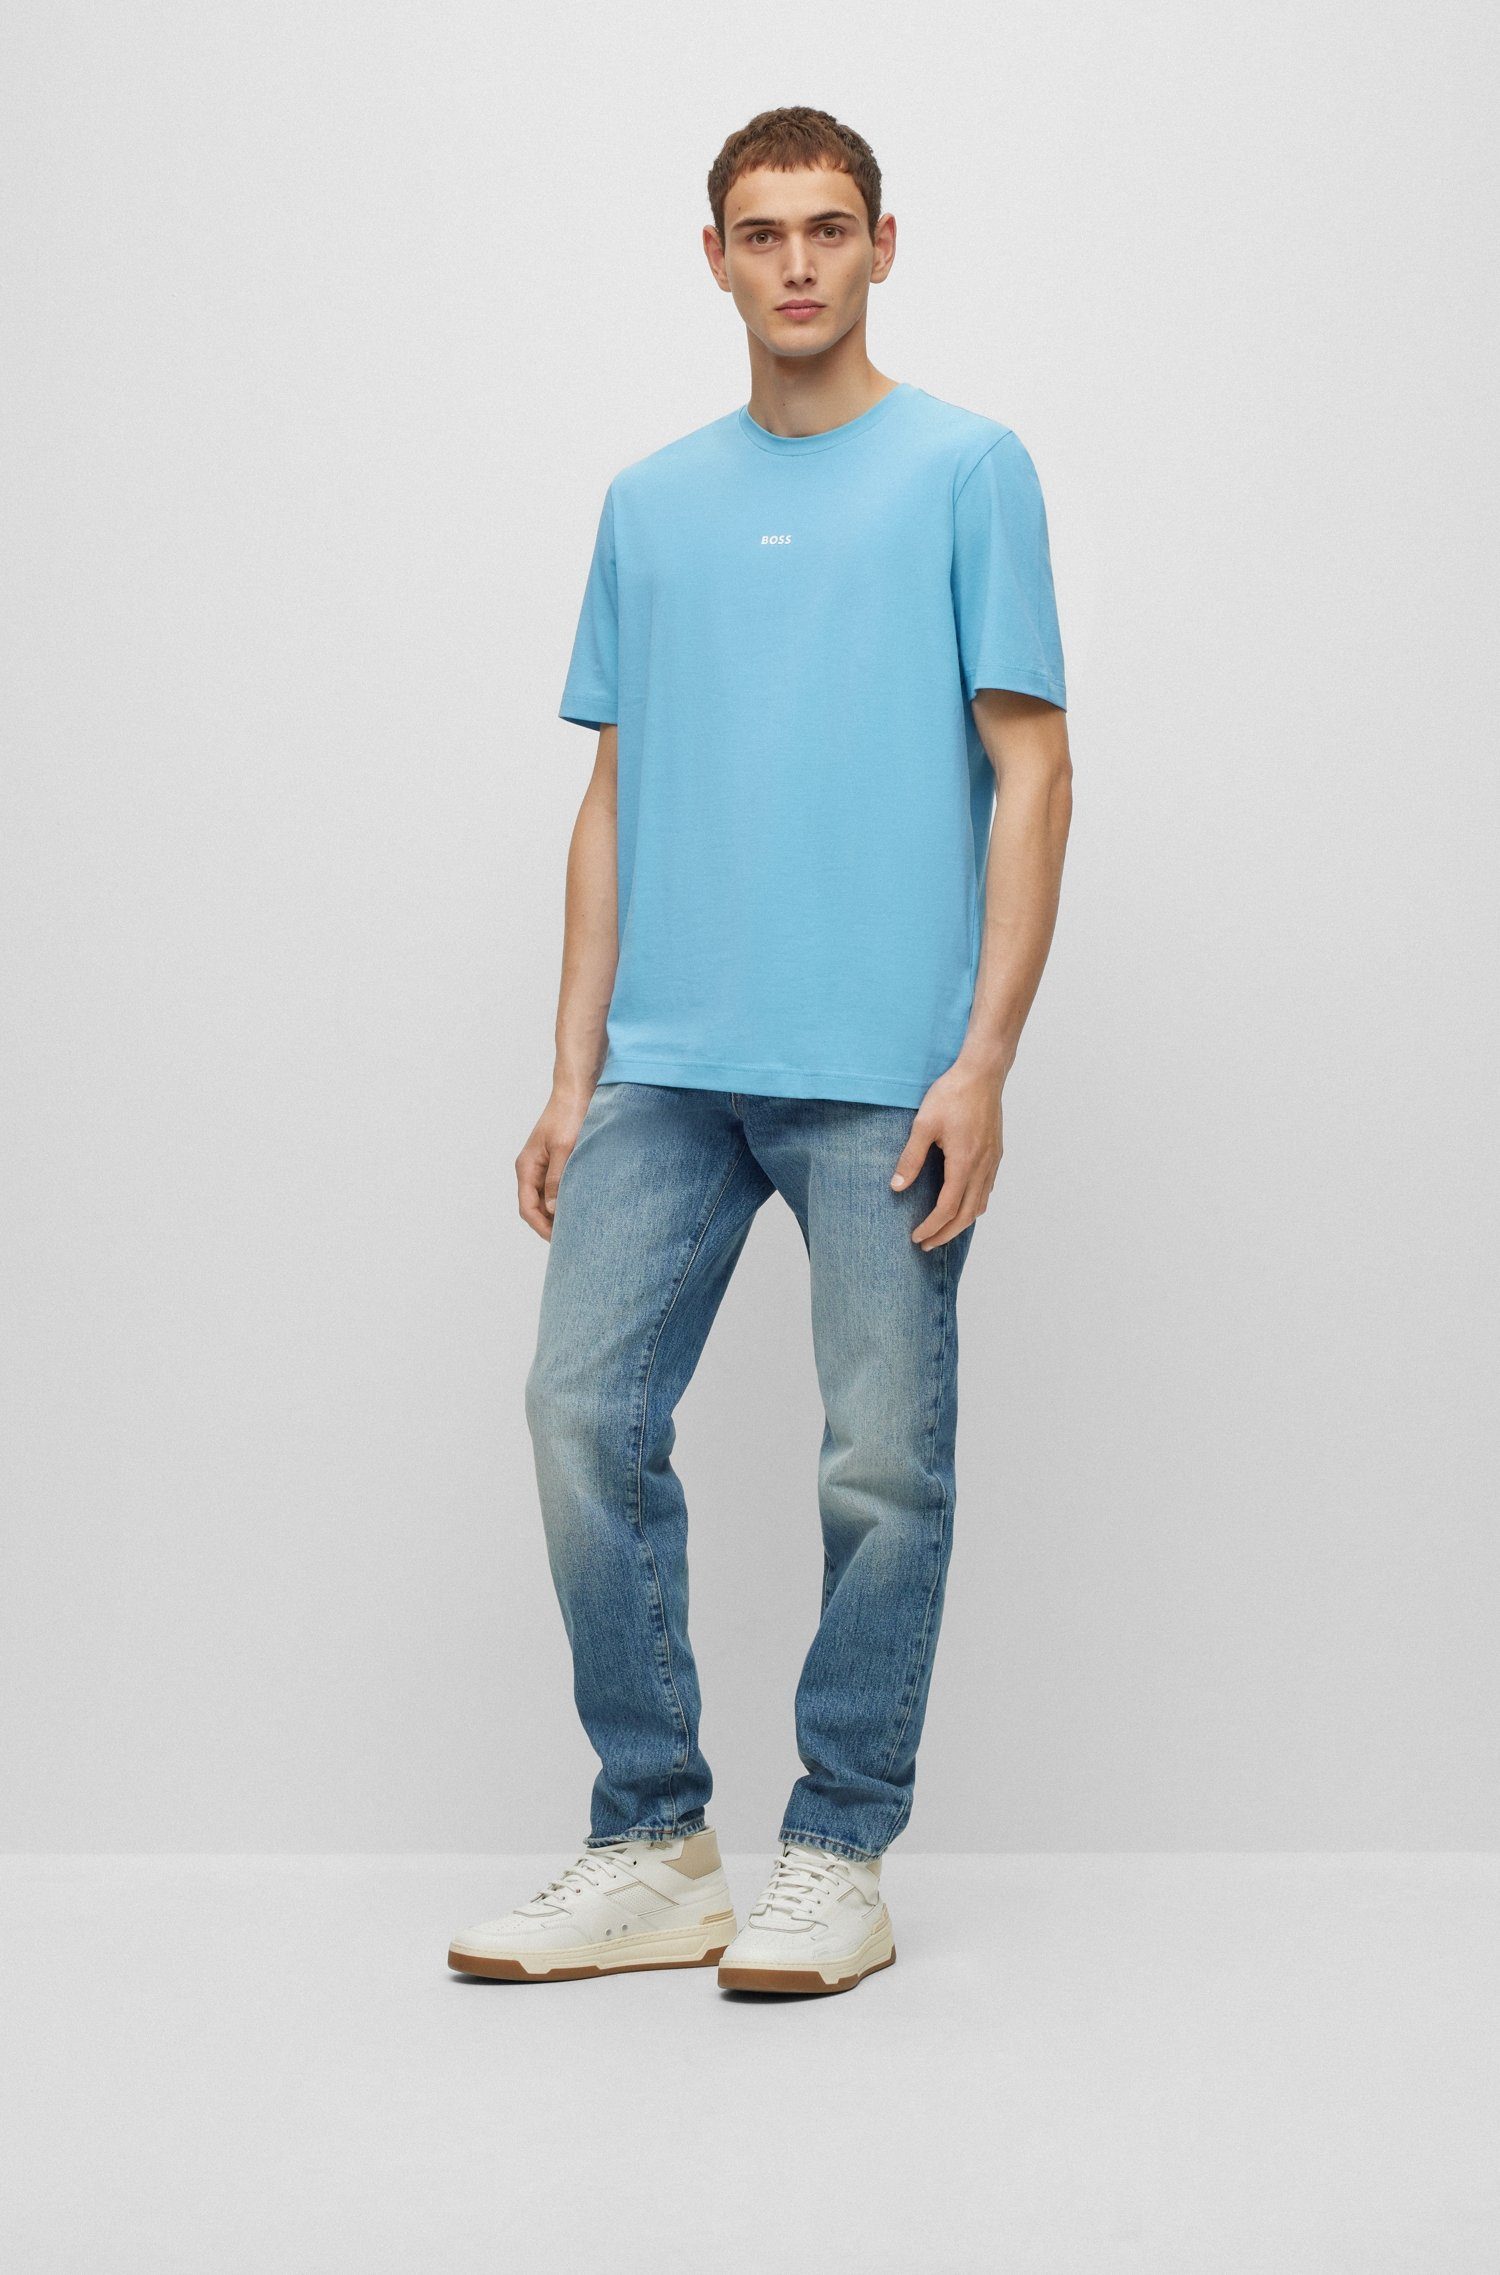 Rundhalsausschnitt ORANGE mit Open_Blue493 T-Shirt BOSS TChup